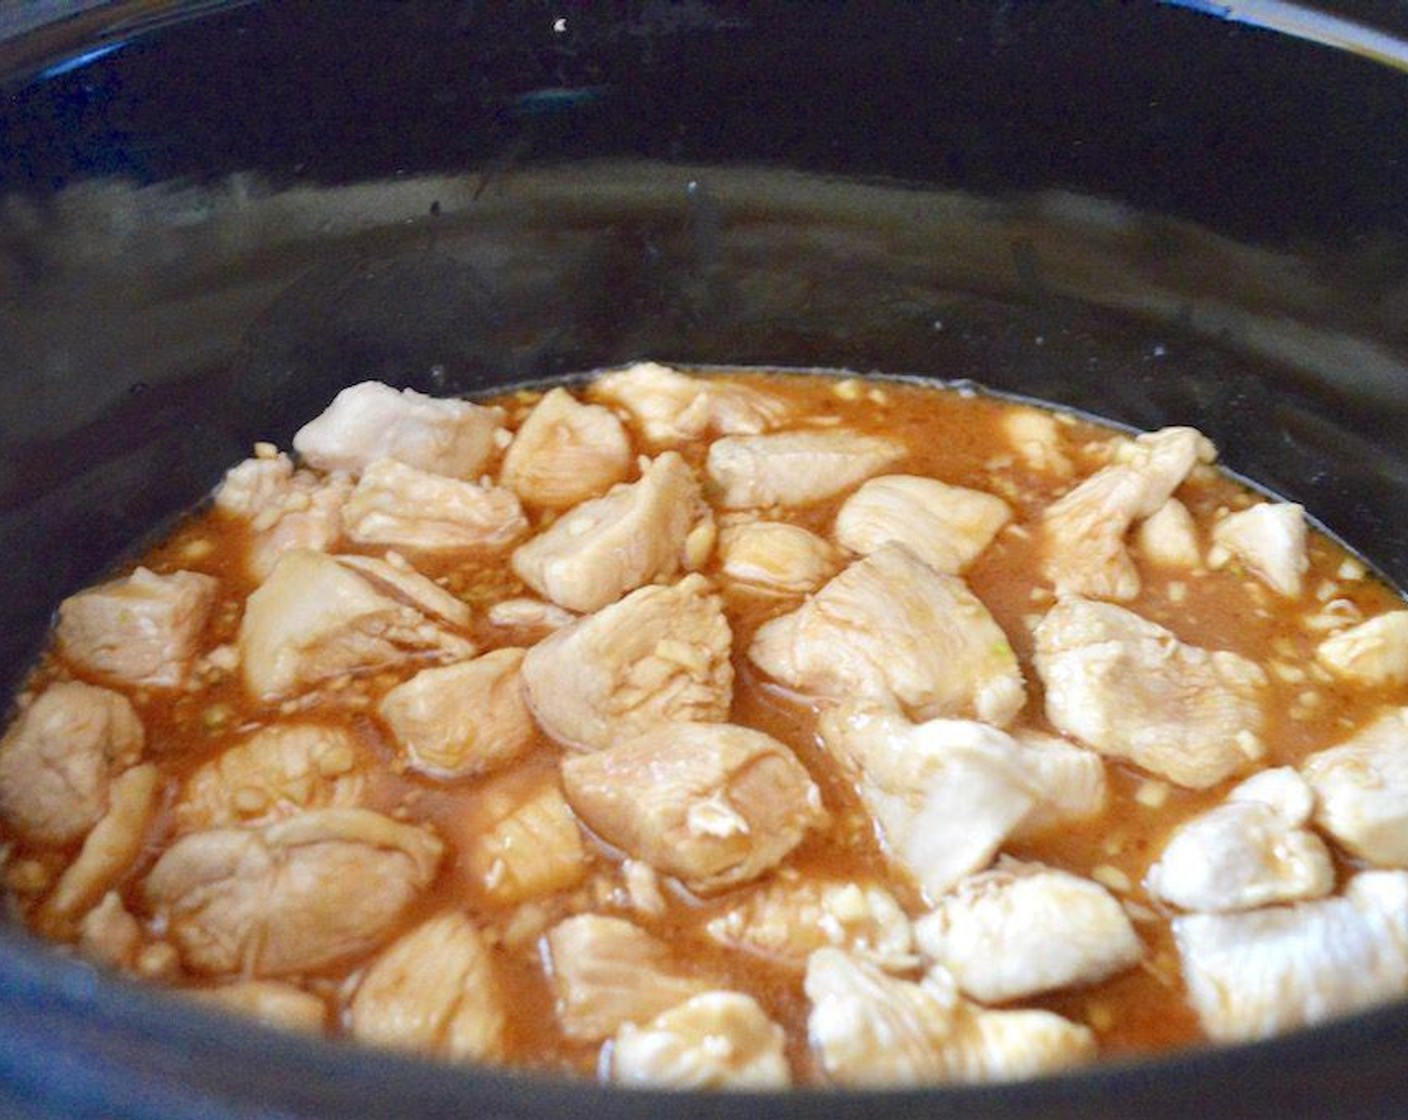 Schritt 3 Die restliche Maizena (2 Esslöffel) mit dem Wasser (120 ml) zu einem Brei verrühren und mit dem Hähnchen in den Kochtopf geben. Gehackten Knoblauch (3 Zehen), Sojasauce (120 ml), Honig (125 g), das restliche Sesamöl (1 EL) und Reisessig (90 ml) hinzufügen. Alles zusammen verrühren und die Hitze auf niedrig stellen. Den Topf verschliessen und alles 3 Stunden kochen lassen.